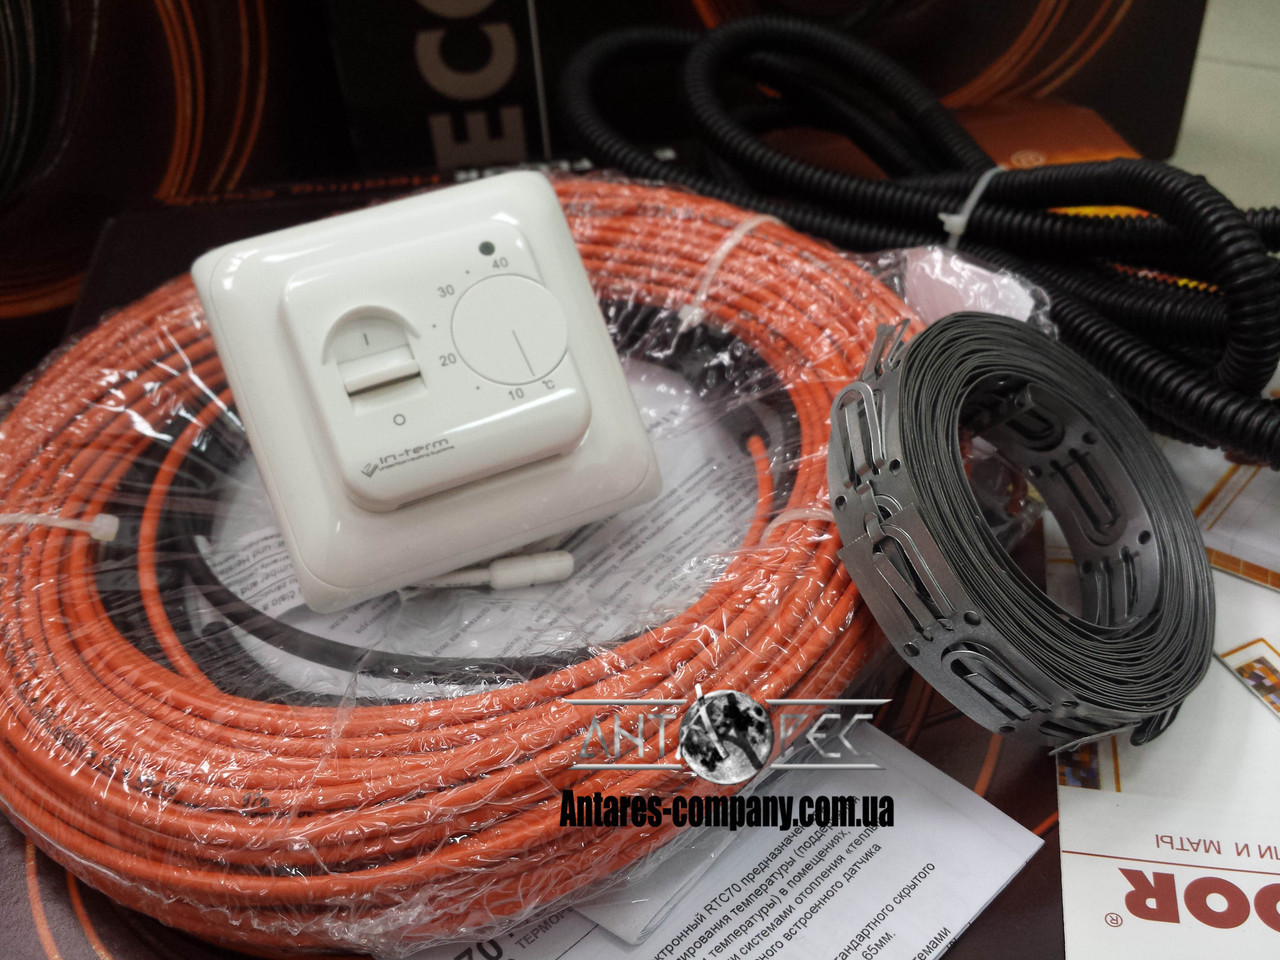 Двожильний нагрівальний кабель Fenix Adsv , 2,8 м. кв. комплект RTC 70.26